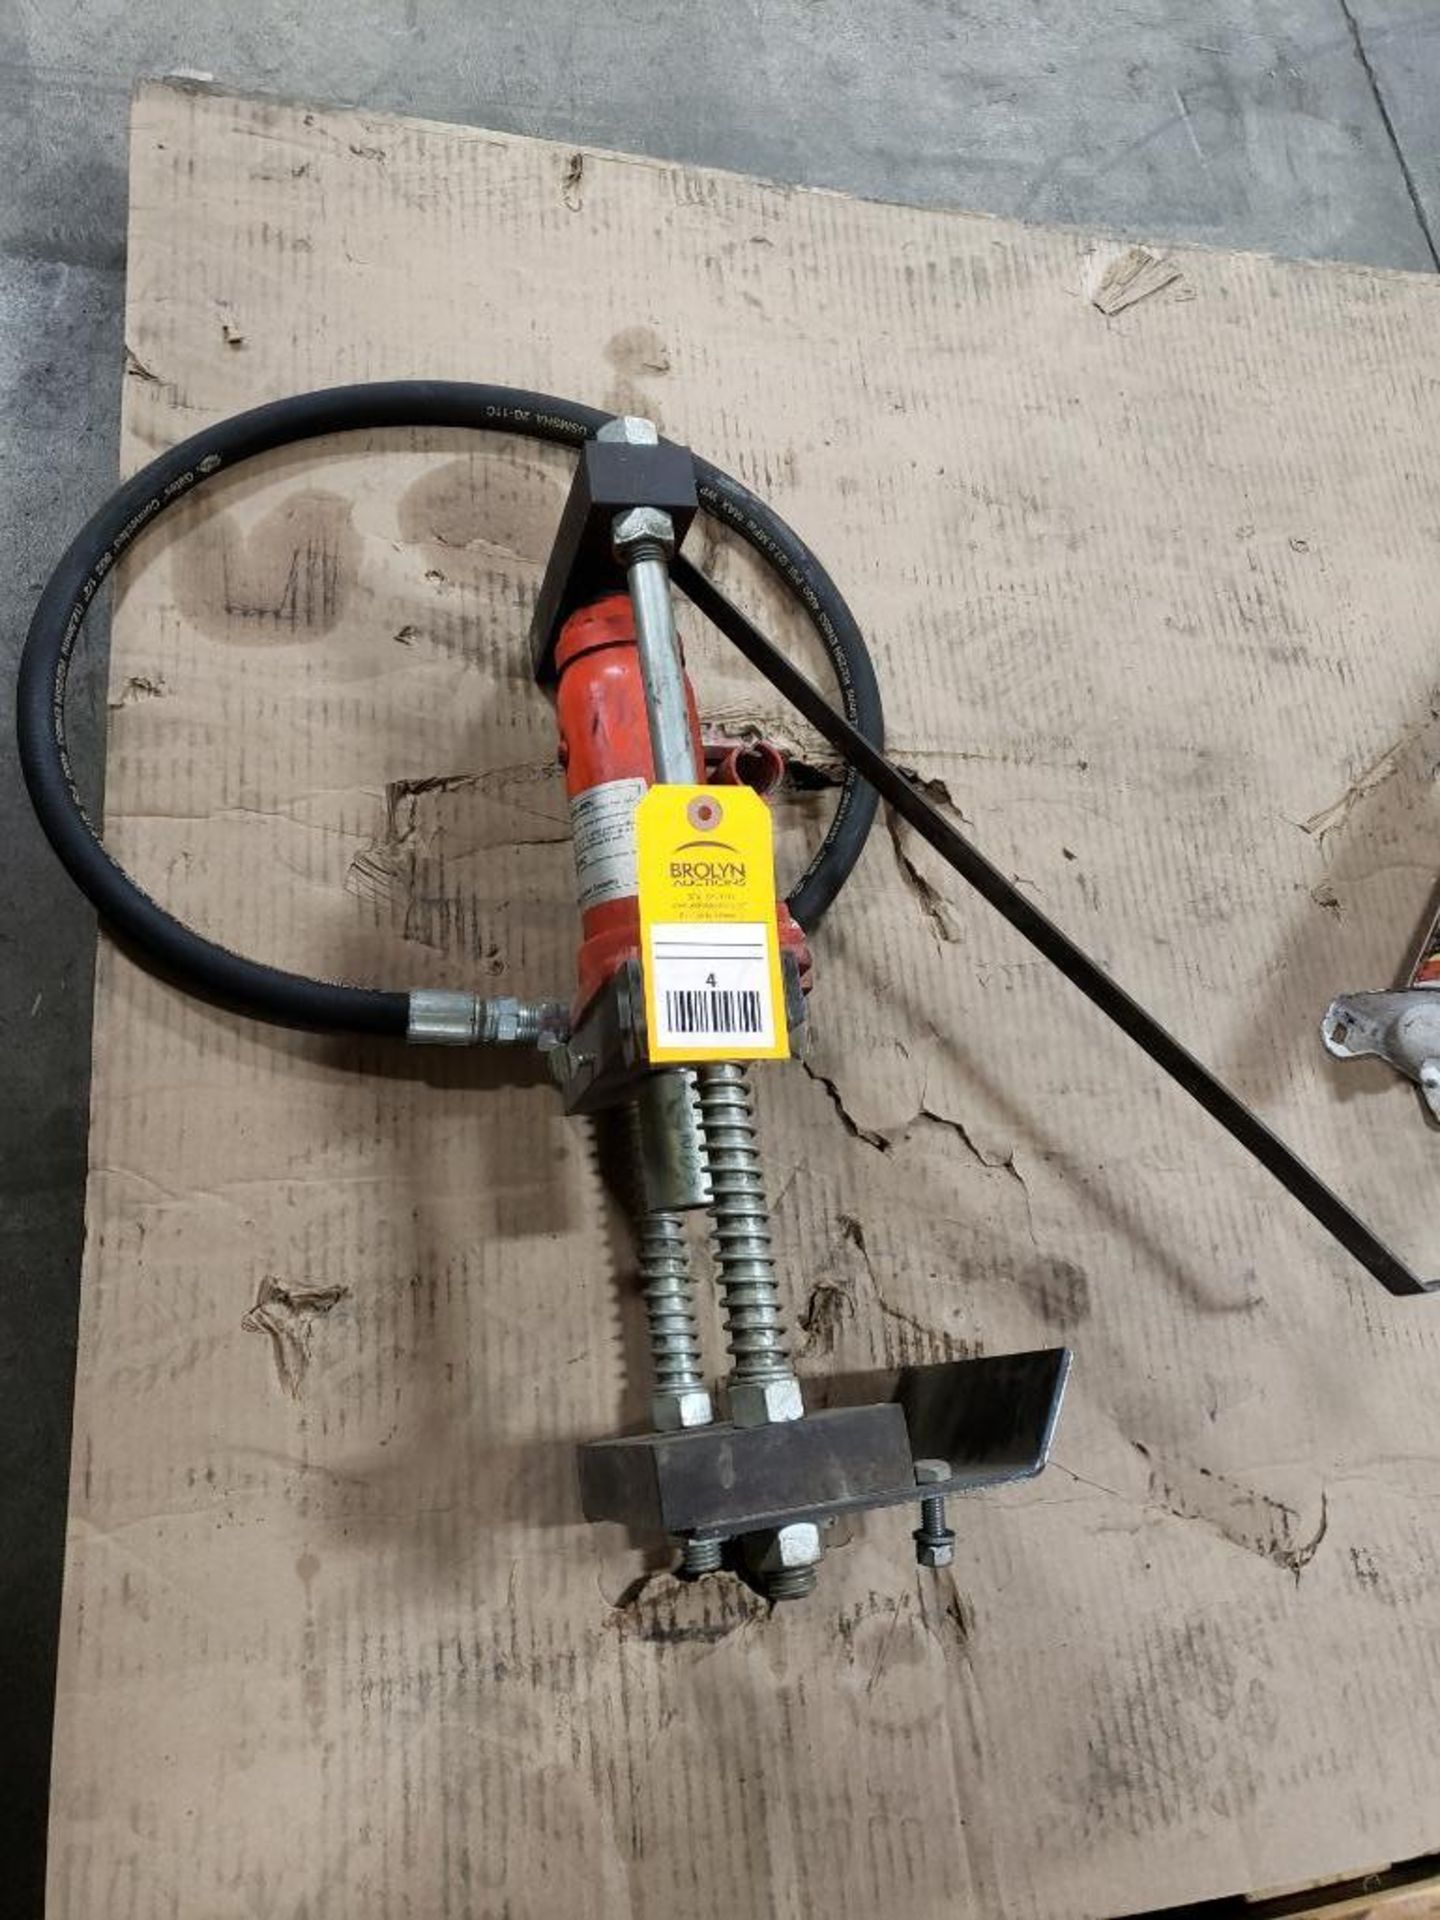 Hydraulic hose end crimping unit.